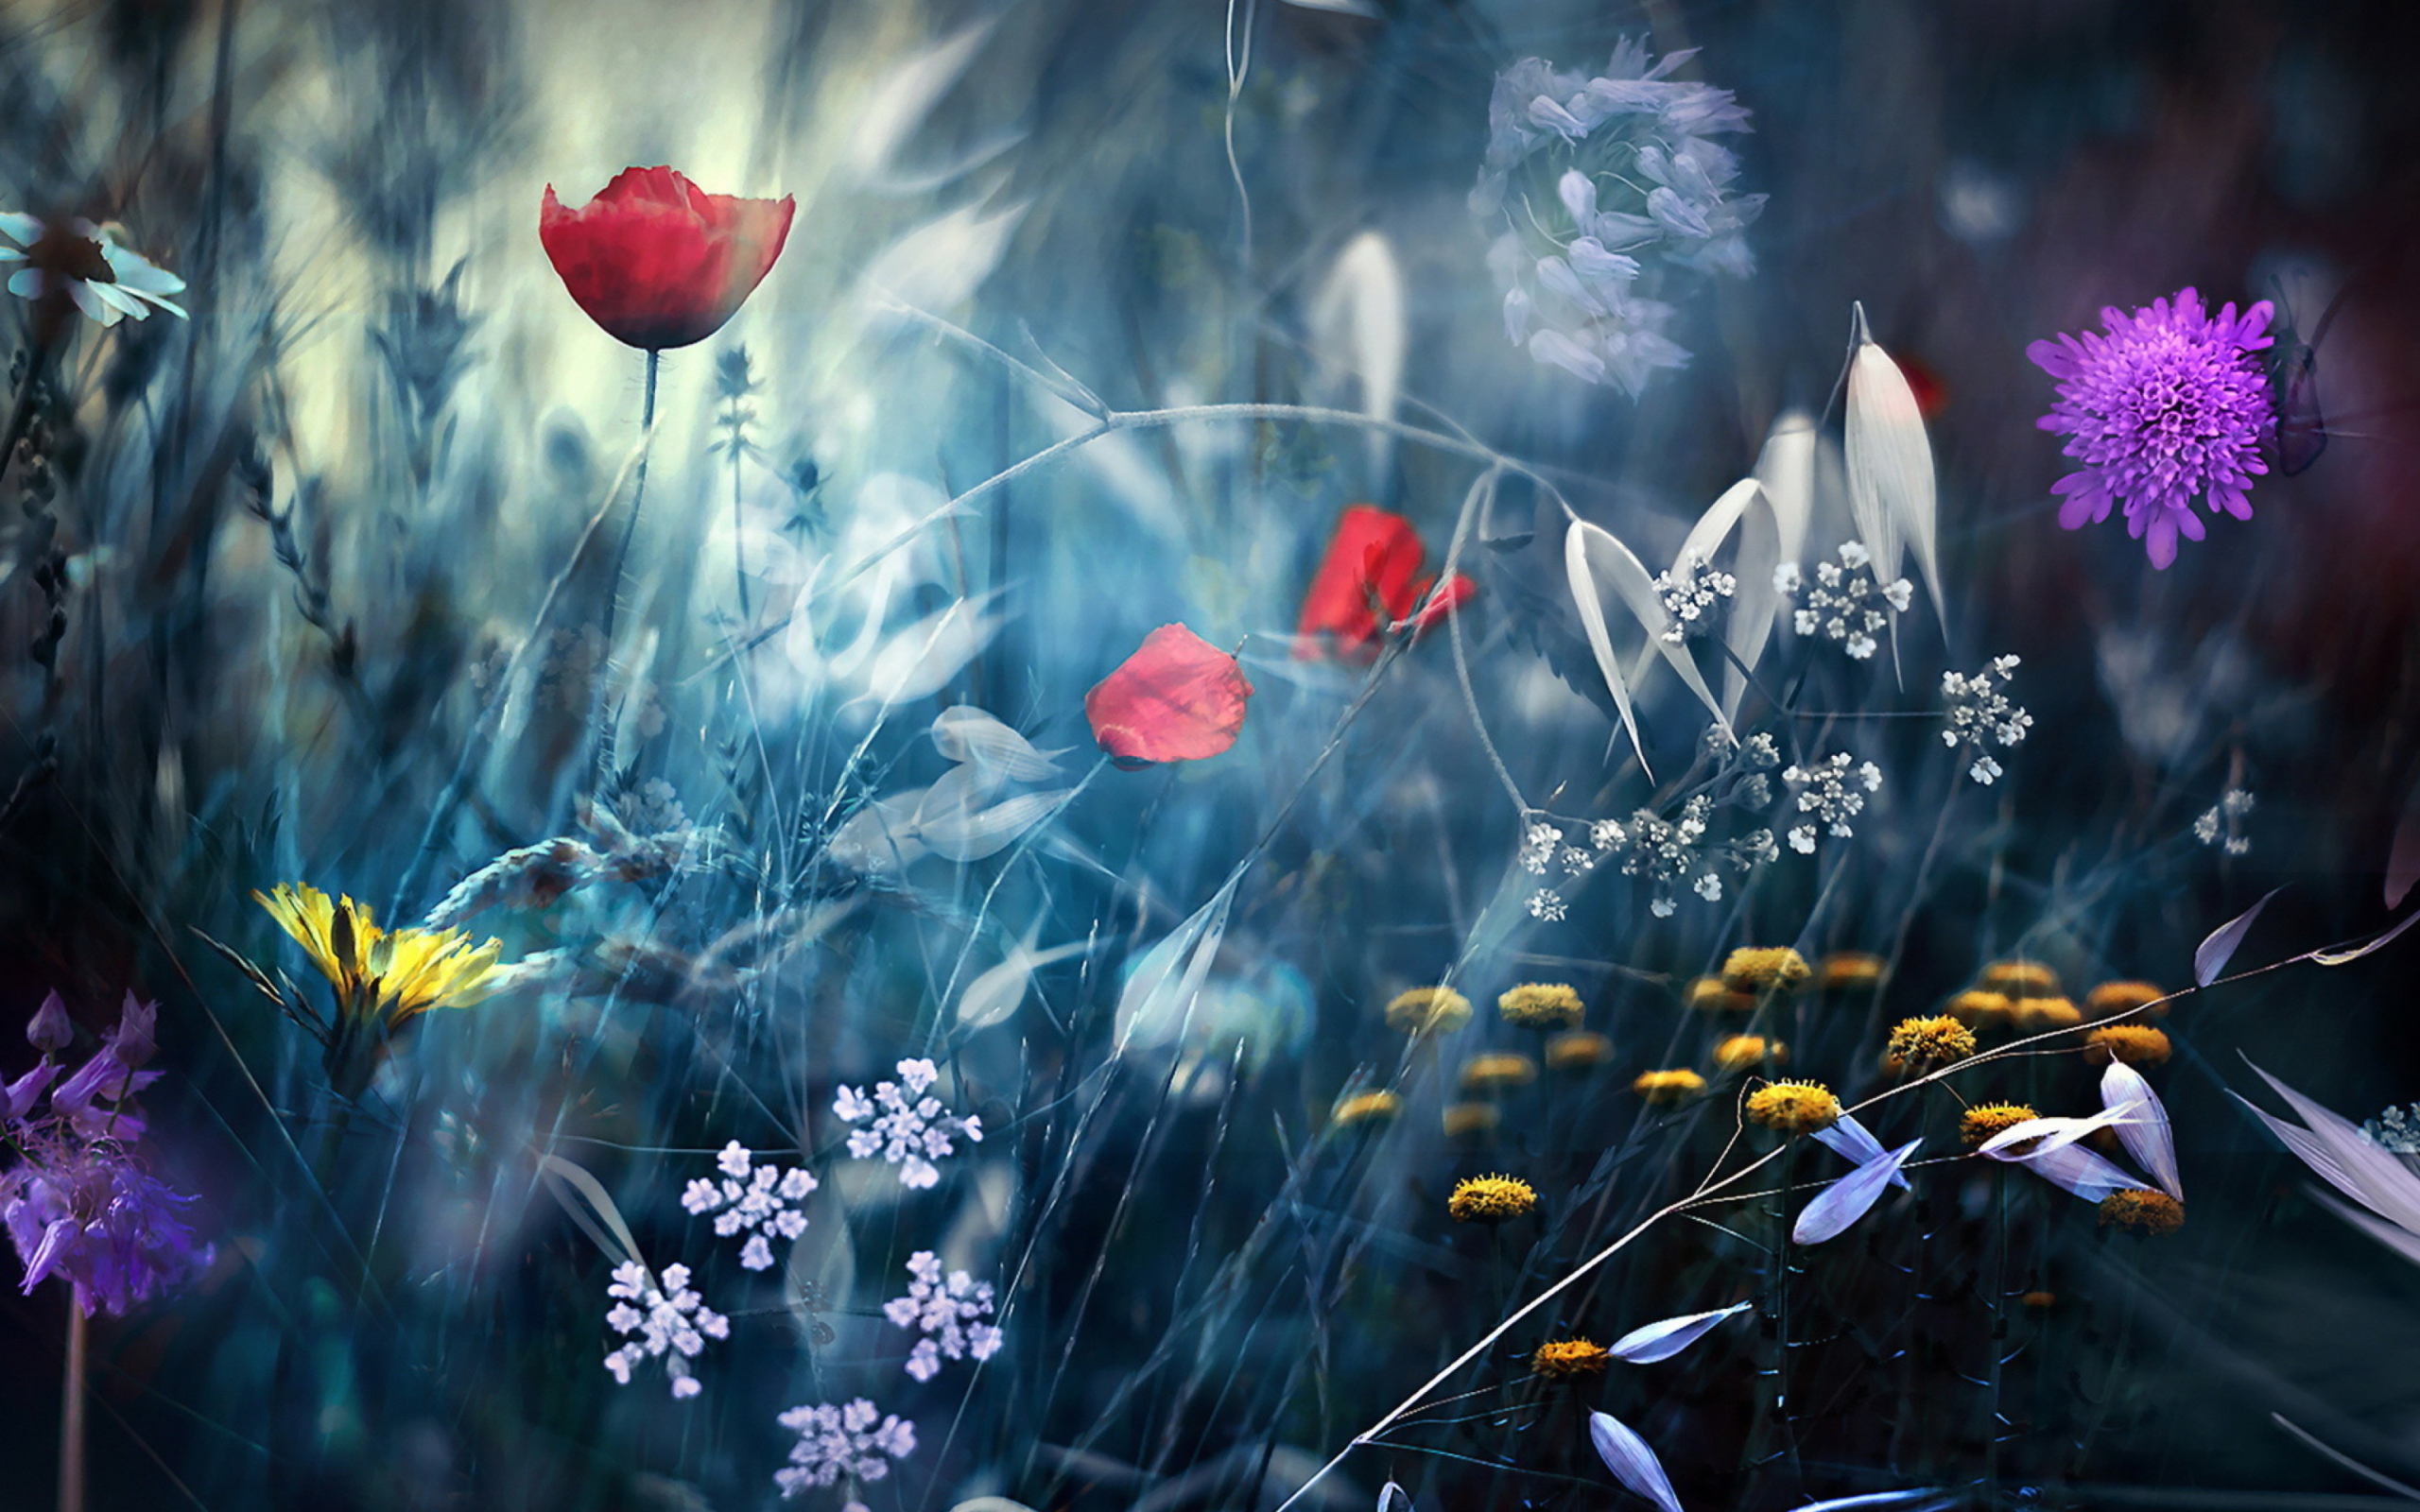 Magical Flower Field wallpaper 2560x1600